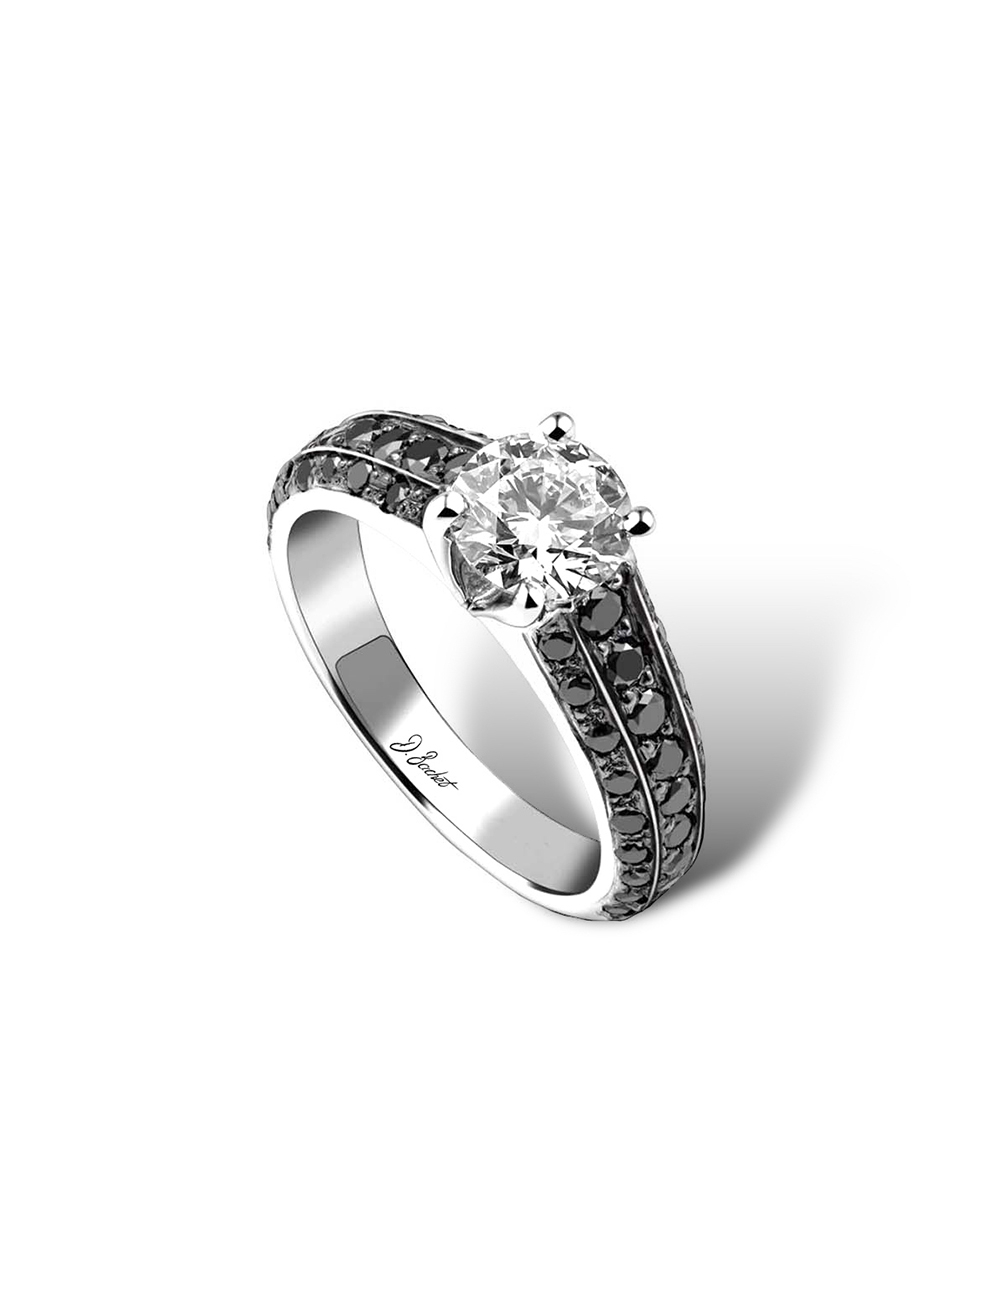 Bague fiançailles platine au design moderne, sertie de diamants noirs et d'un diamant central blanc 0.80ct.